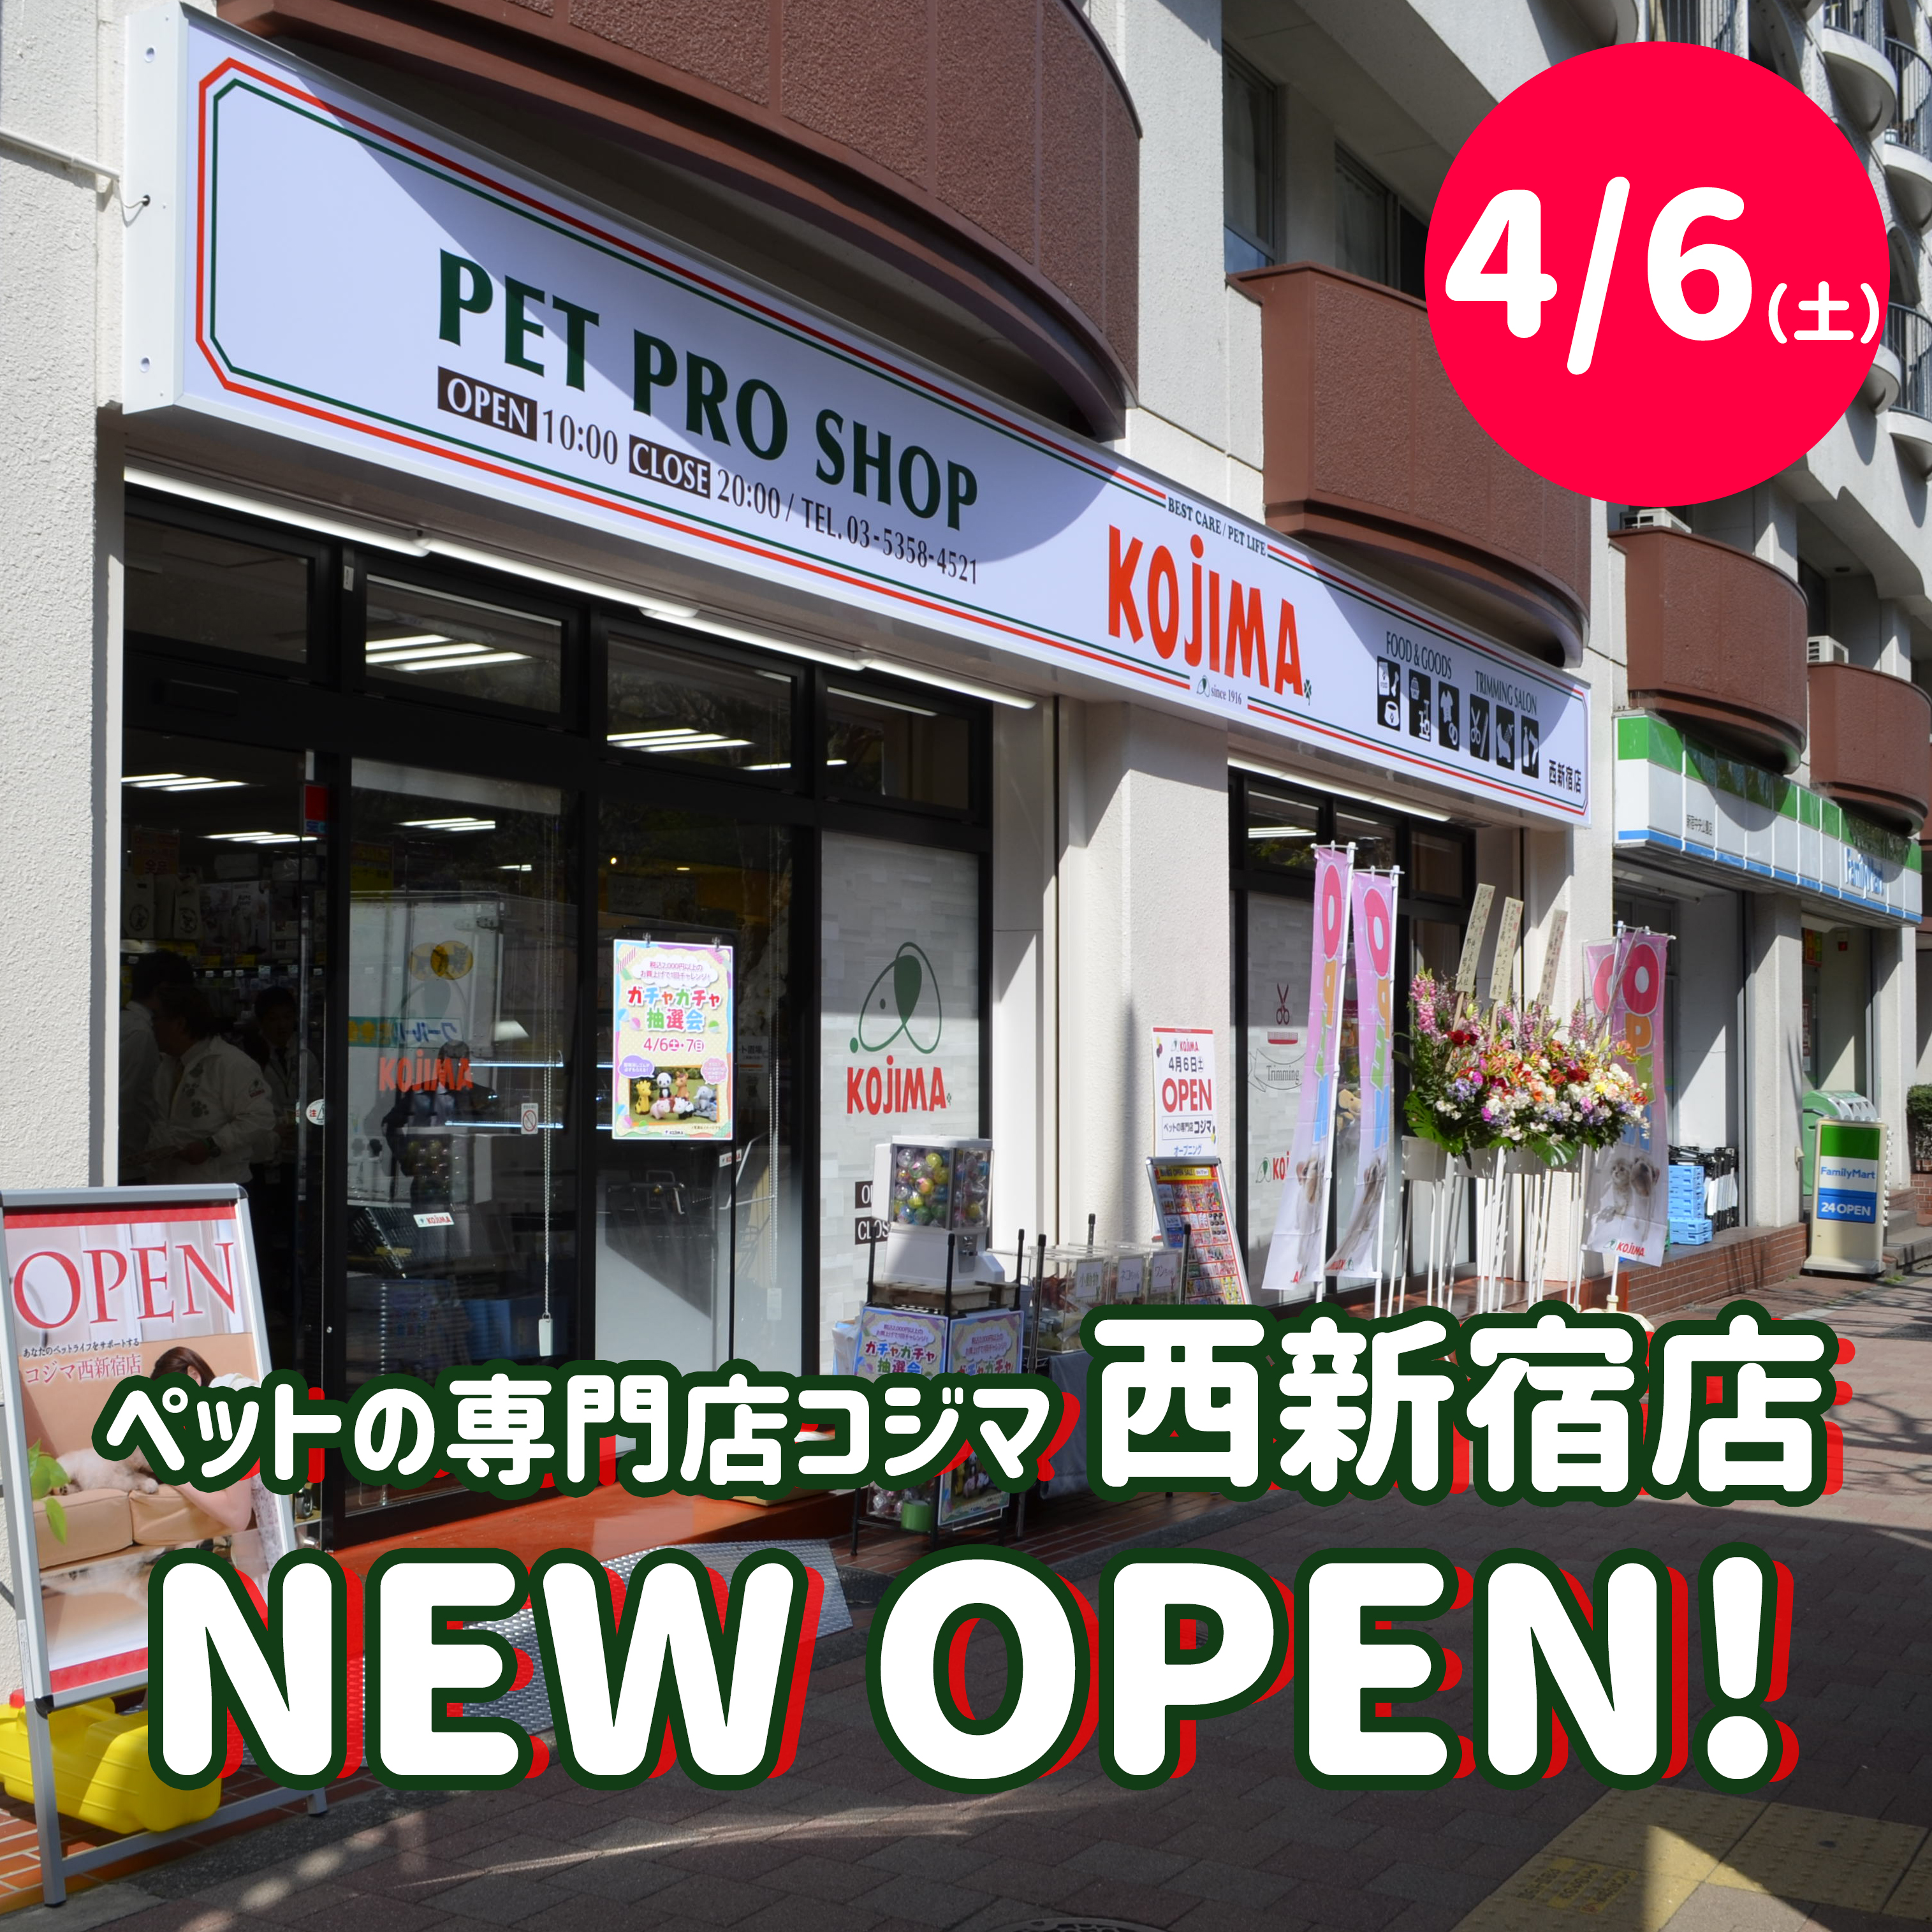 ペットの専門店コジマ 西新宿店 4月6日 土 にニューオープン お店の様子とお得情報をいち早くチェック